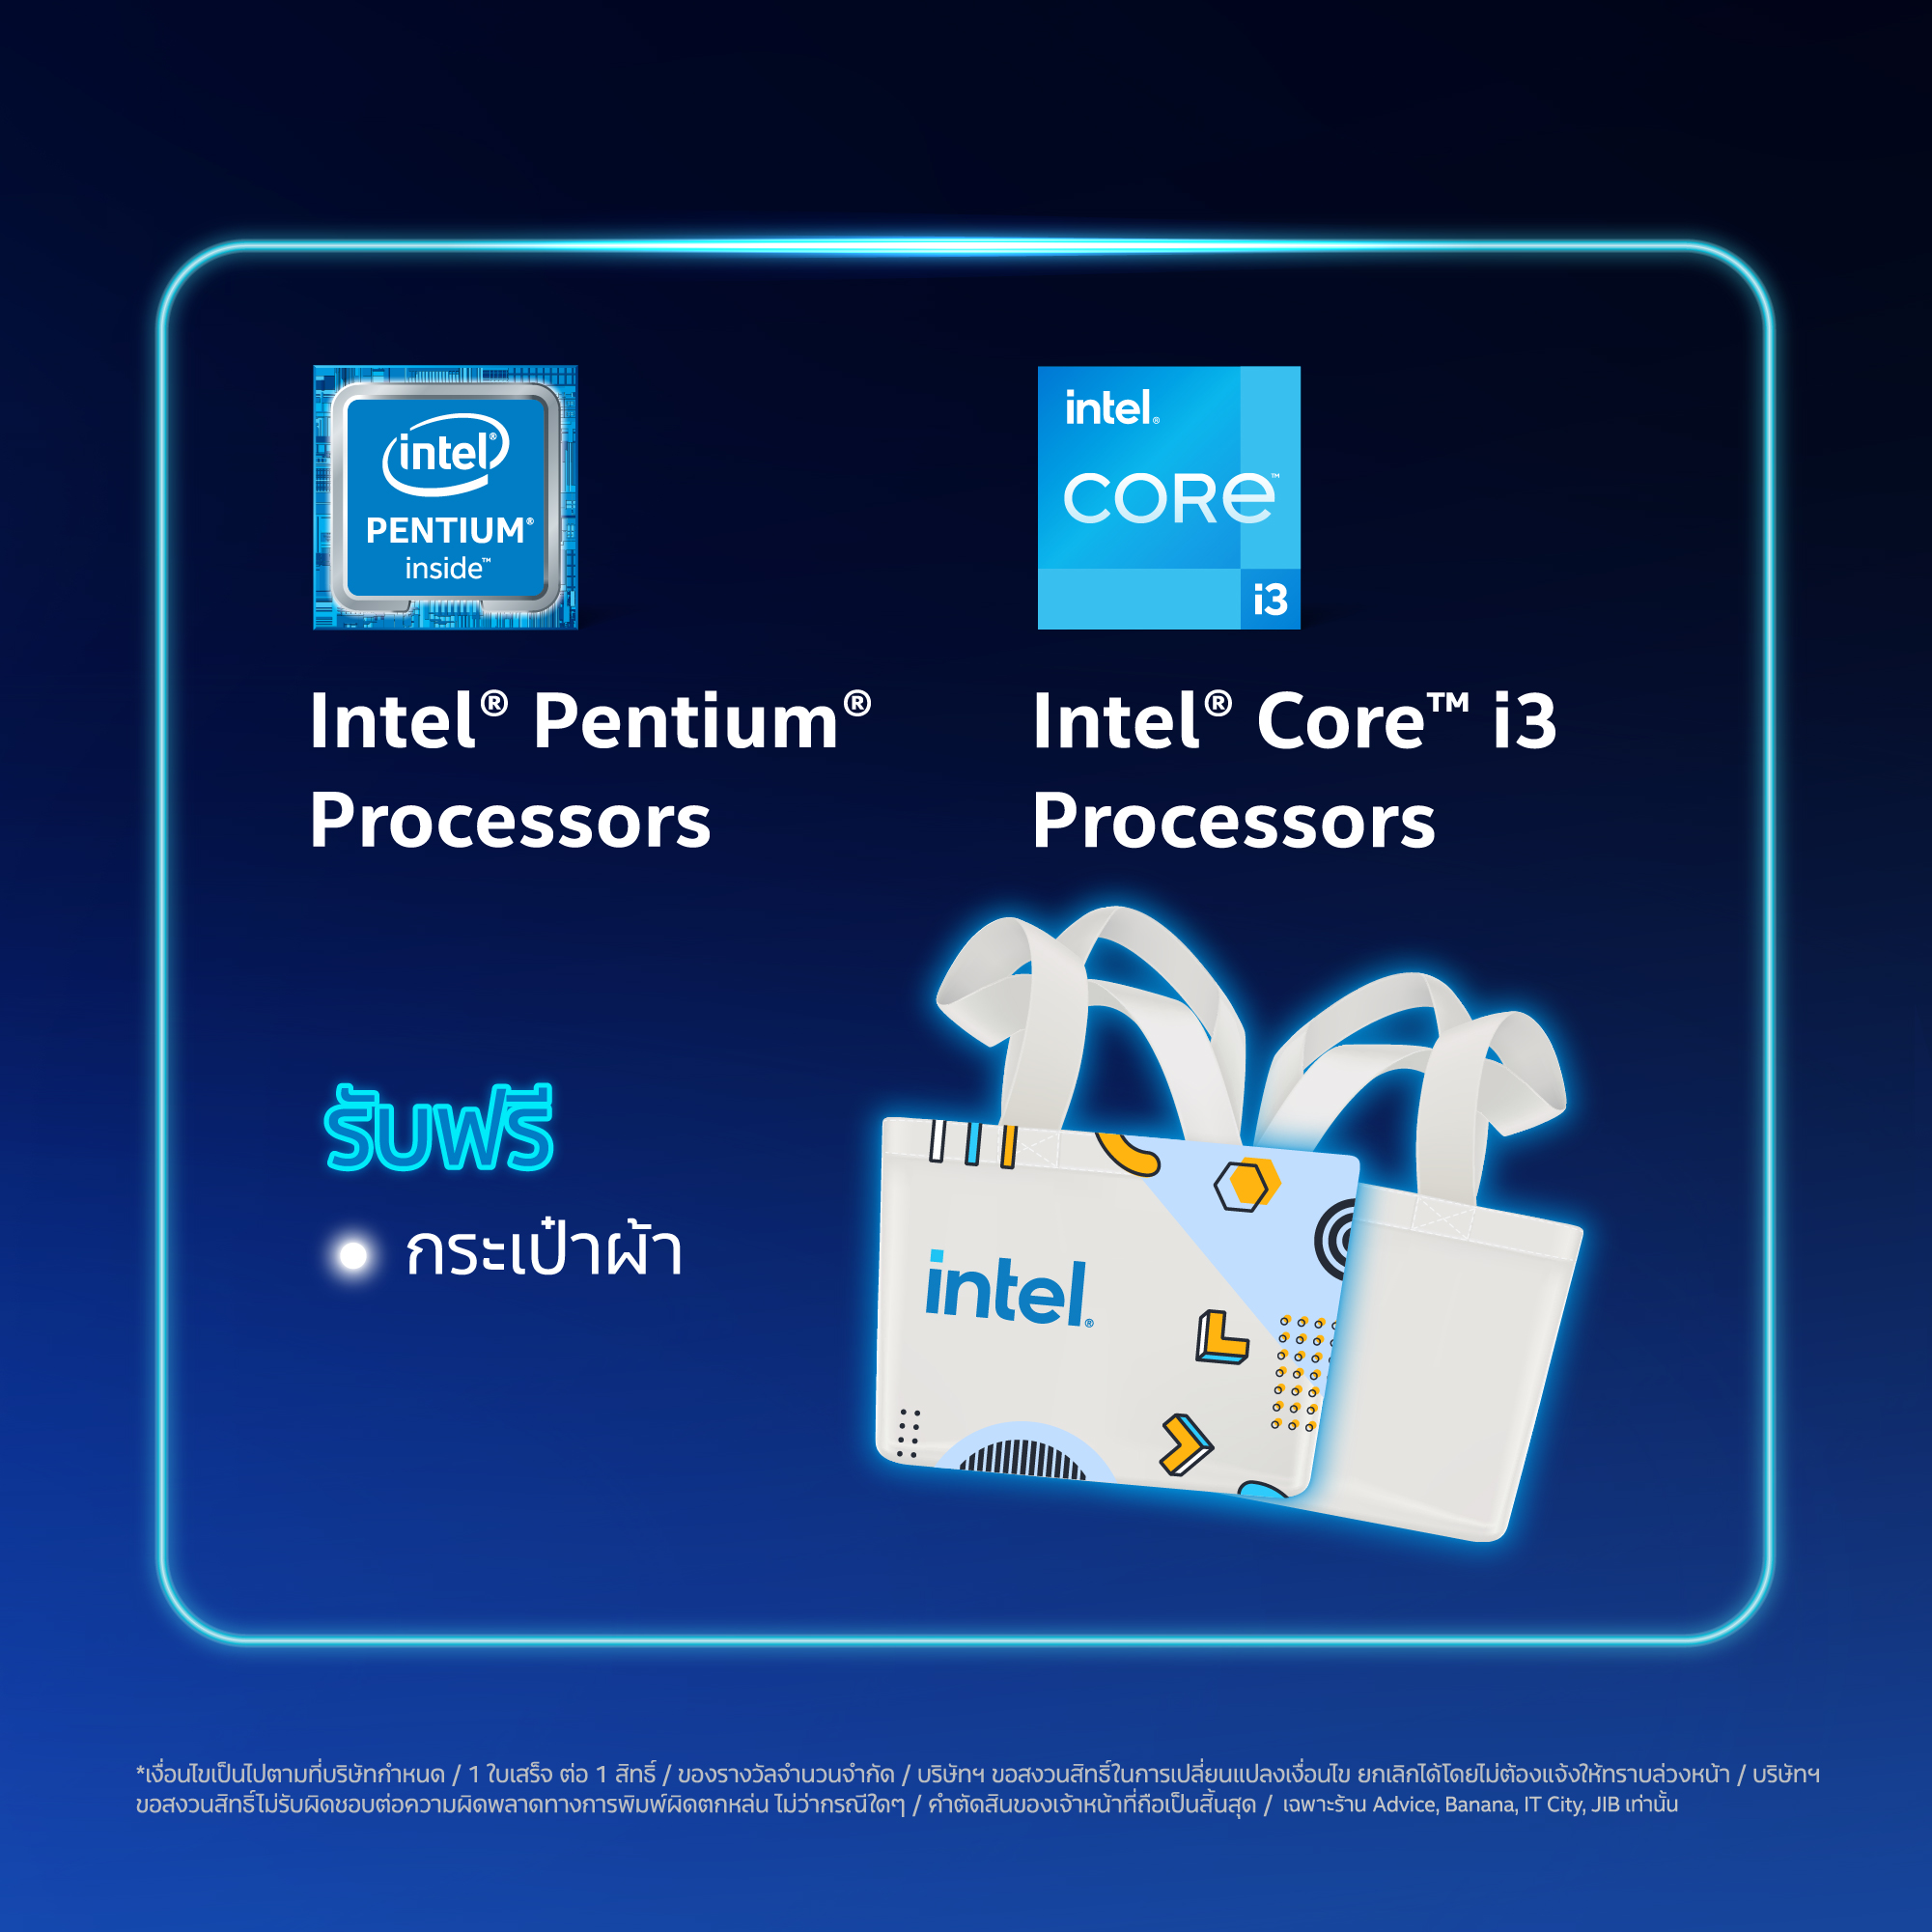 aw online 960x960px 02 Intel จัดโปรโมชั่น COMMART XTREME 2020 ซื้อคอมพิวเตอร์ที่ใช้ซีพียู Intel รับของแถมสุดพิเศษเพียบ! พบกับโปรโมชั่นสุดพิเศษจาก Intel เฉพาะงานคอมมาร์ท ไบเทค บางนา